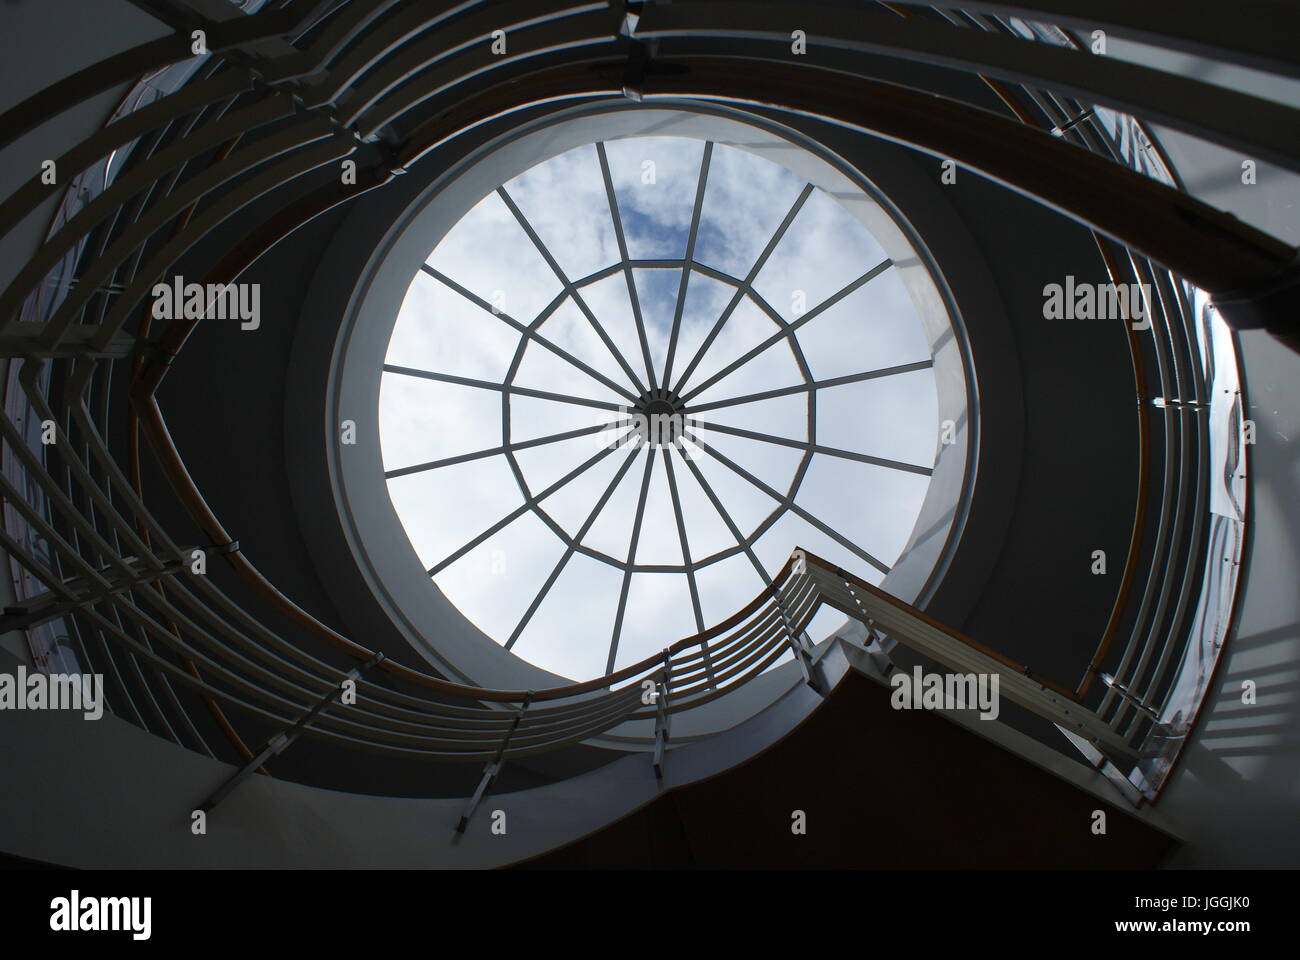 Eine Kreis- oder spiralförmige Treppe in einem modernen Gebäude mit einem Oberlicht. Stockfoto